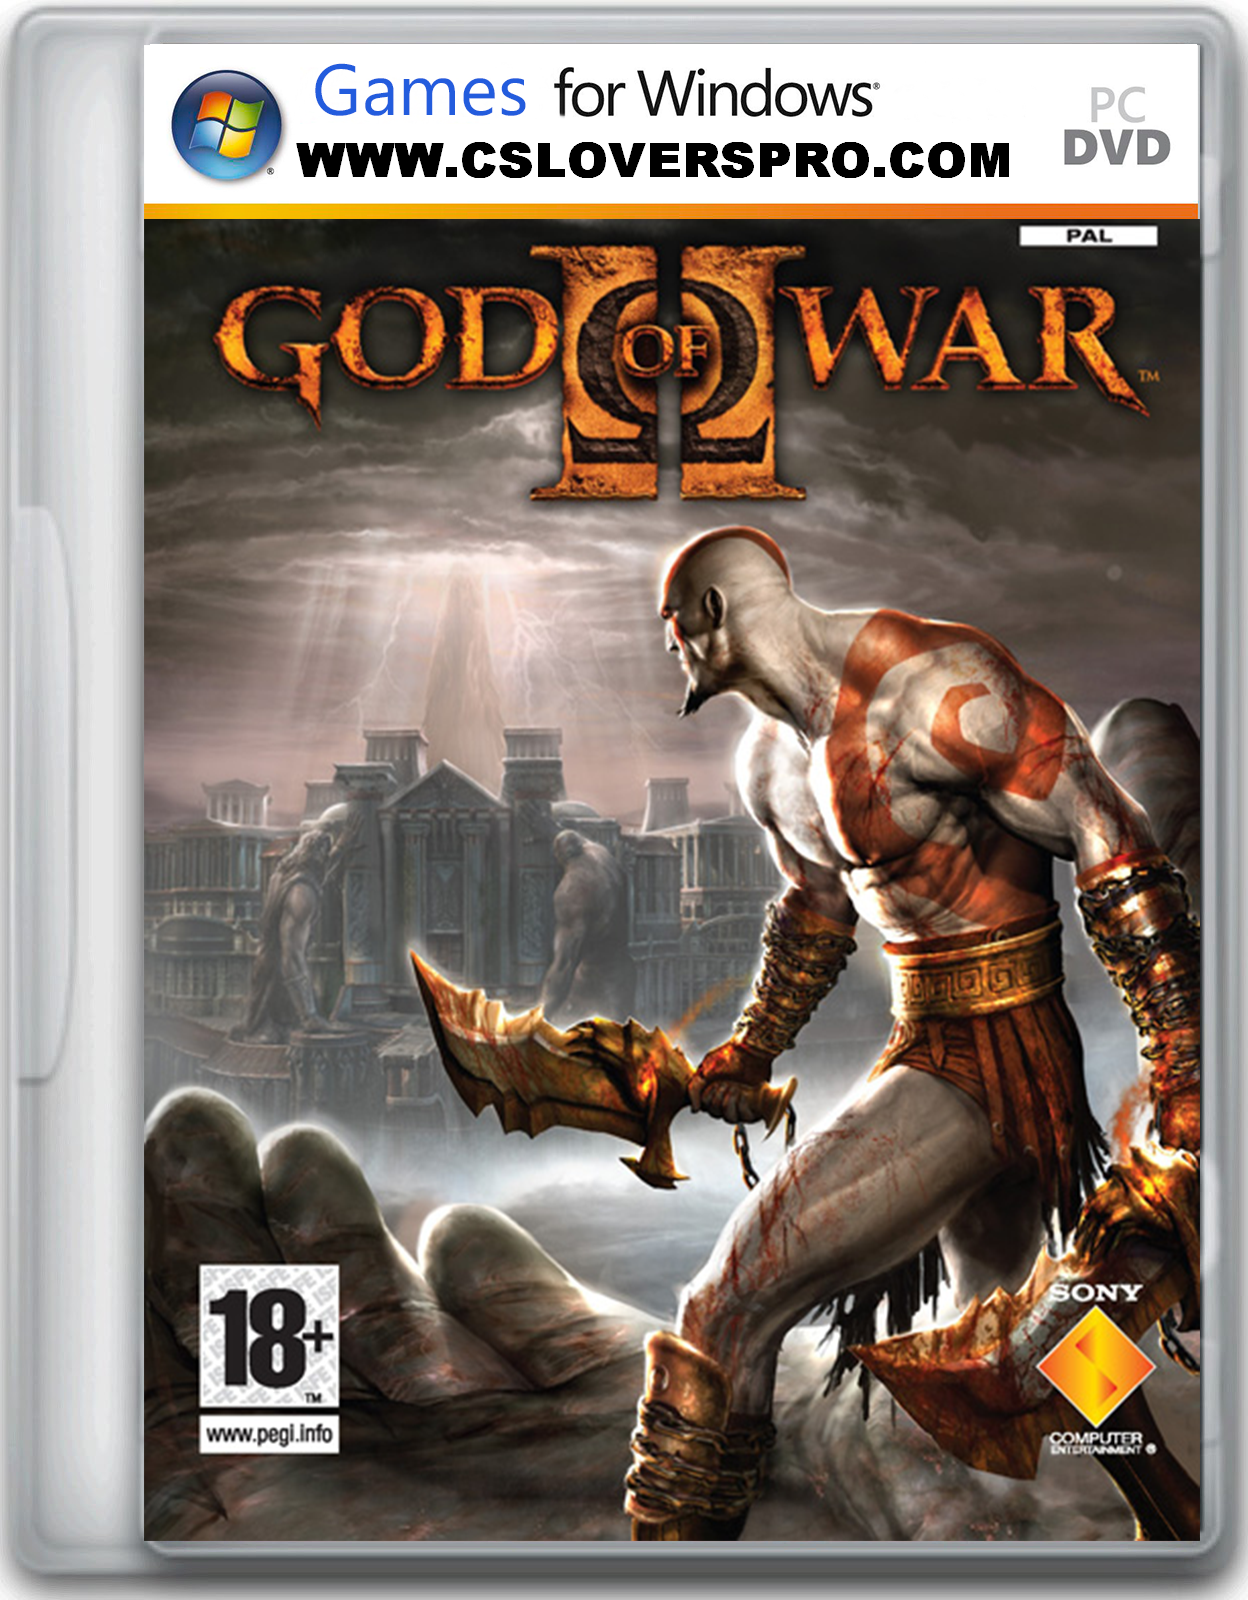 Download Game God Of War 2 Ppsspp